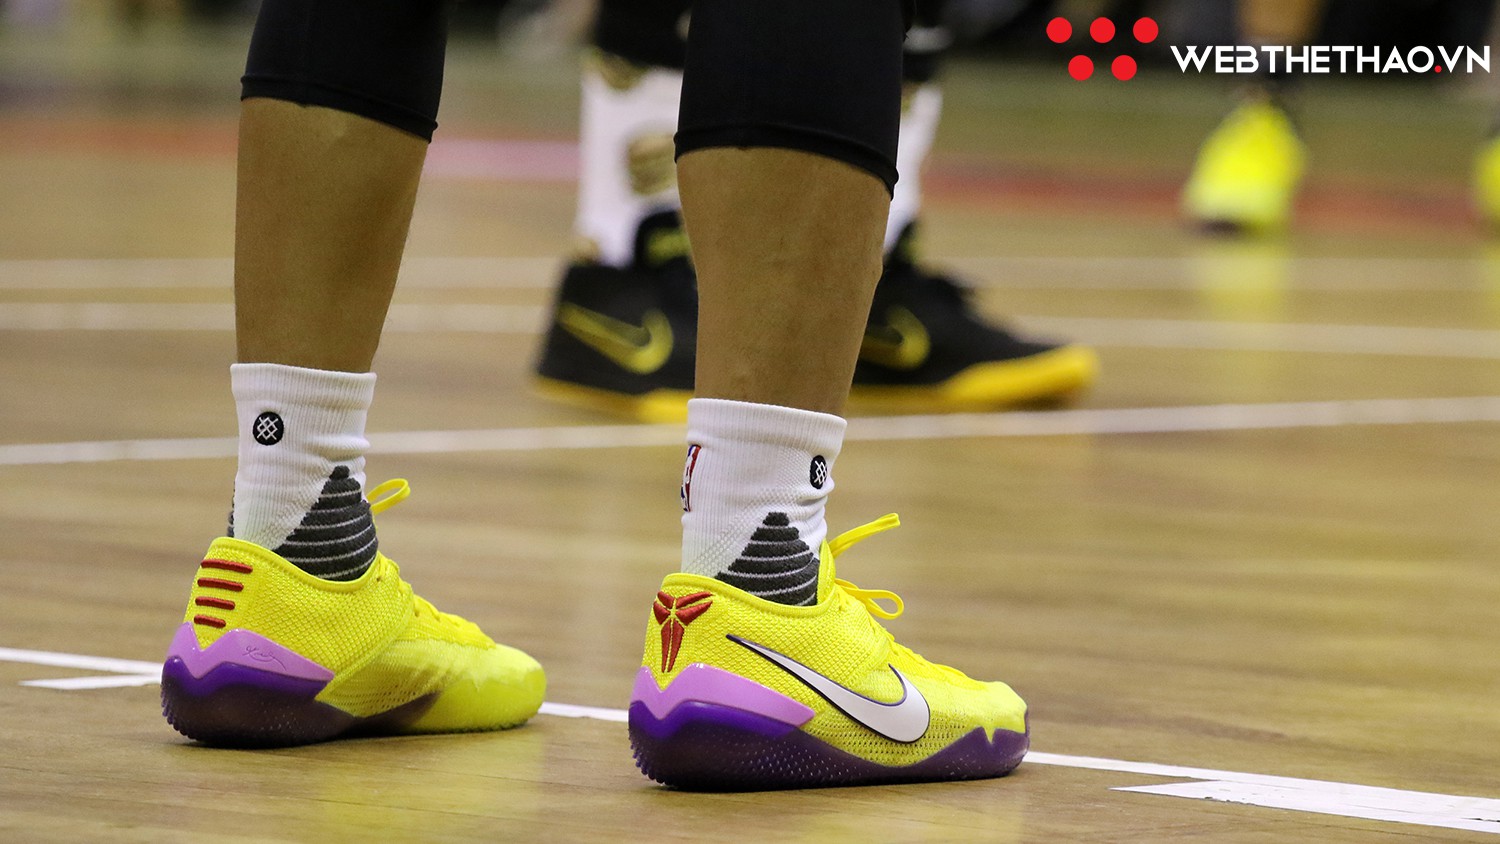 Vớ hồng là xưa rồi, Cantho Catfish giờ chơi hẳn giày đội với những mẫu Nike Kobe cực chất - Ảnh 4.